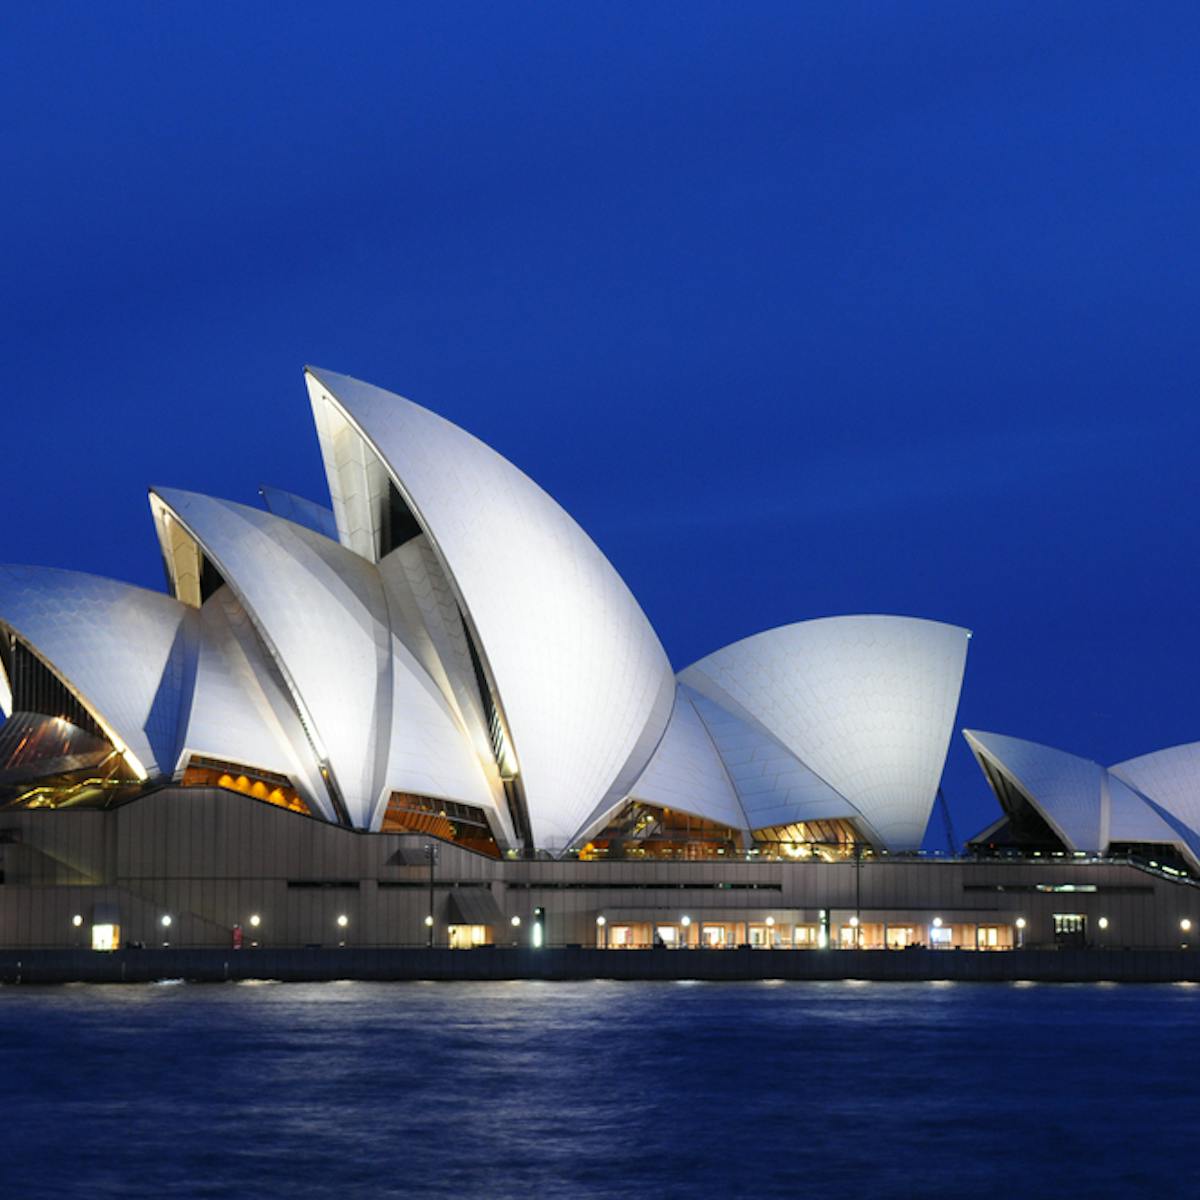 sydney opera house cost overrun